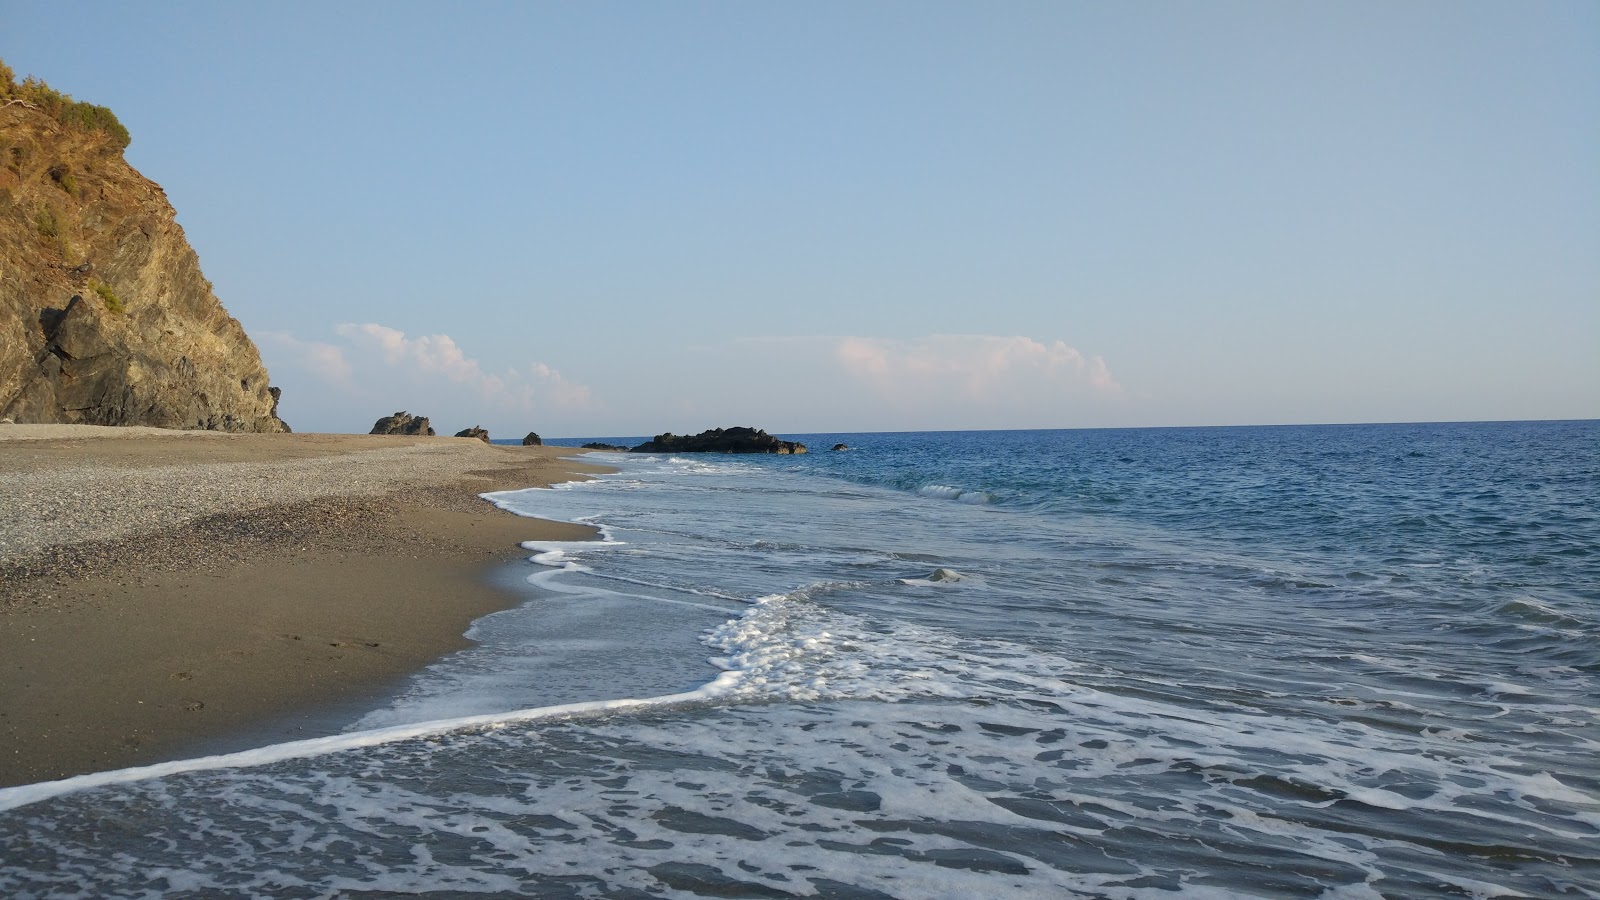 Demiroren beach'in fotoğrafı geniş plaj ile birlikte